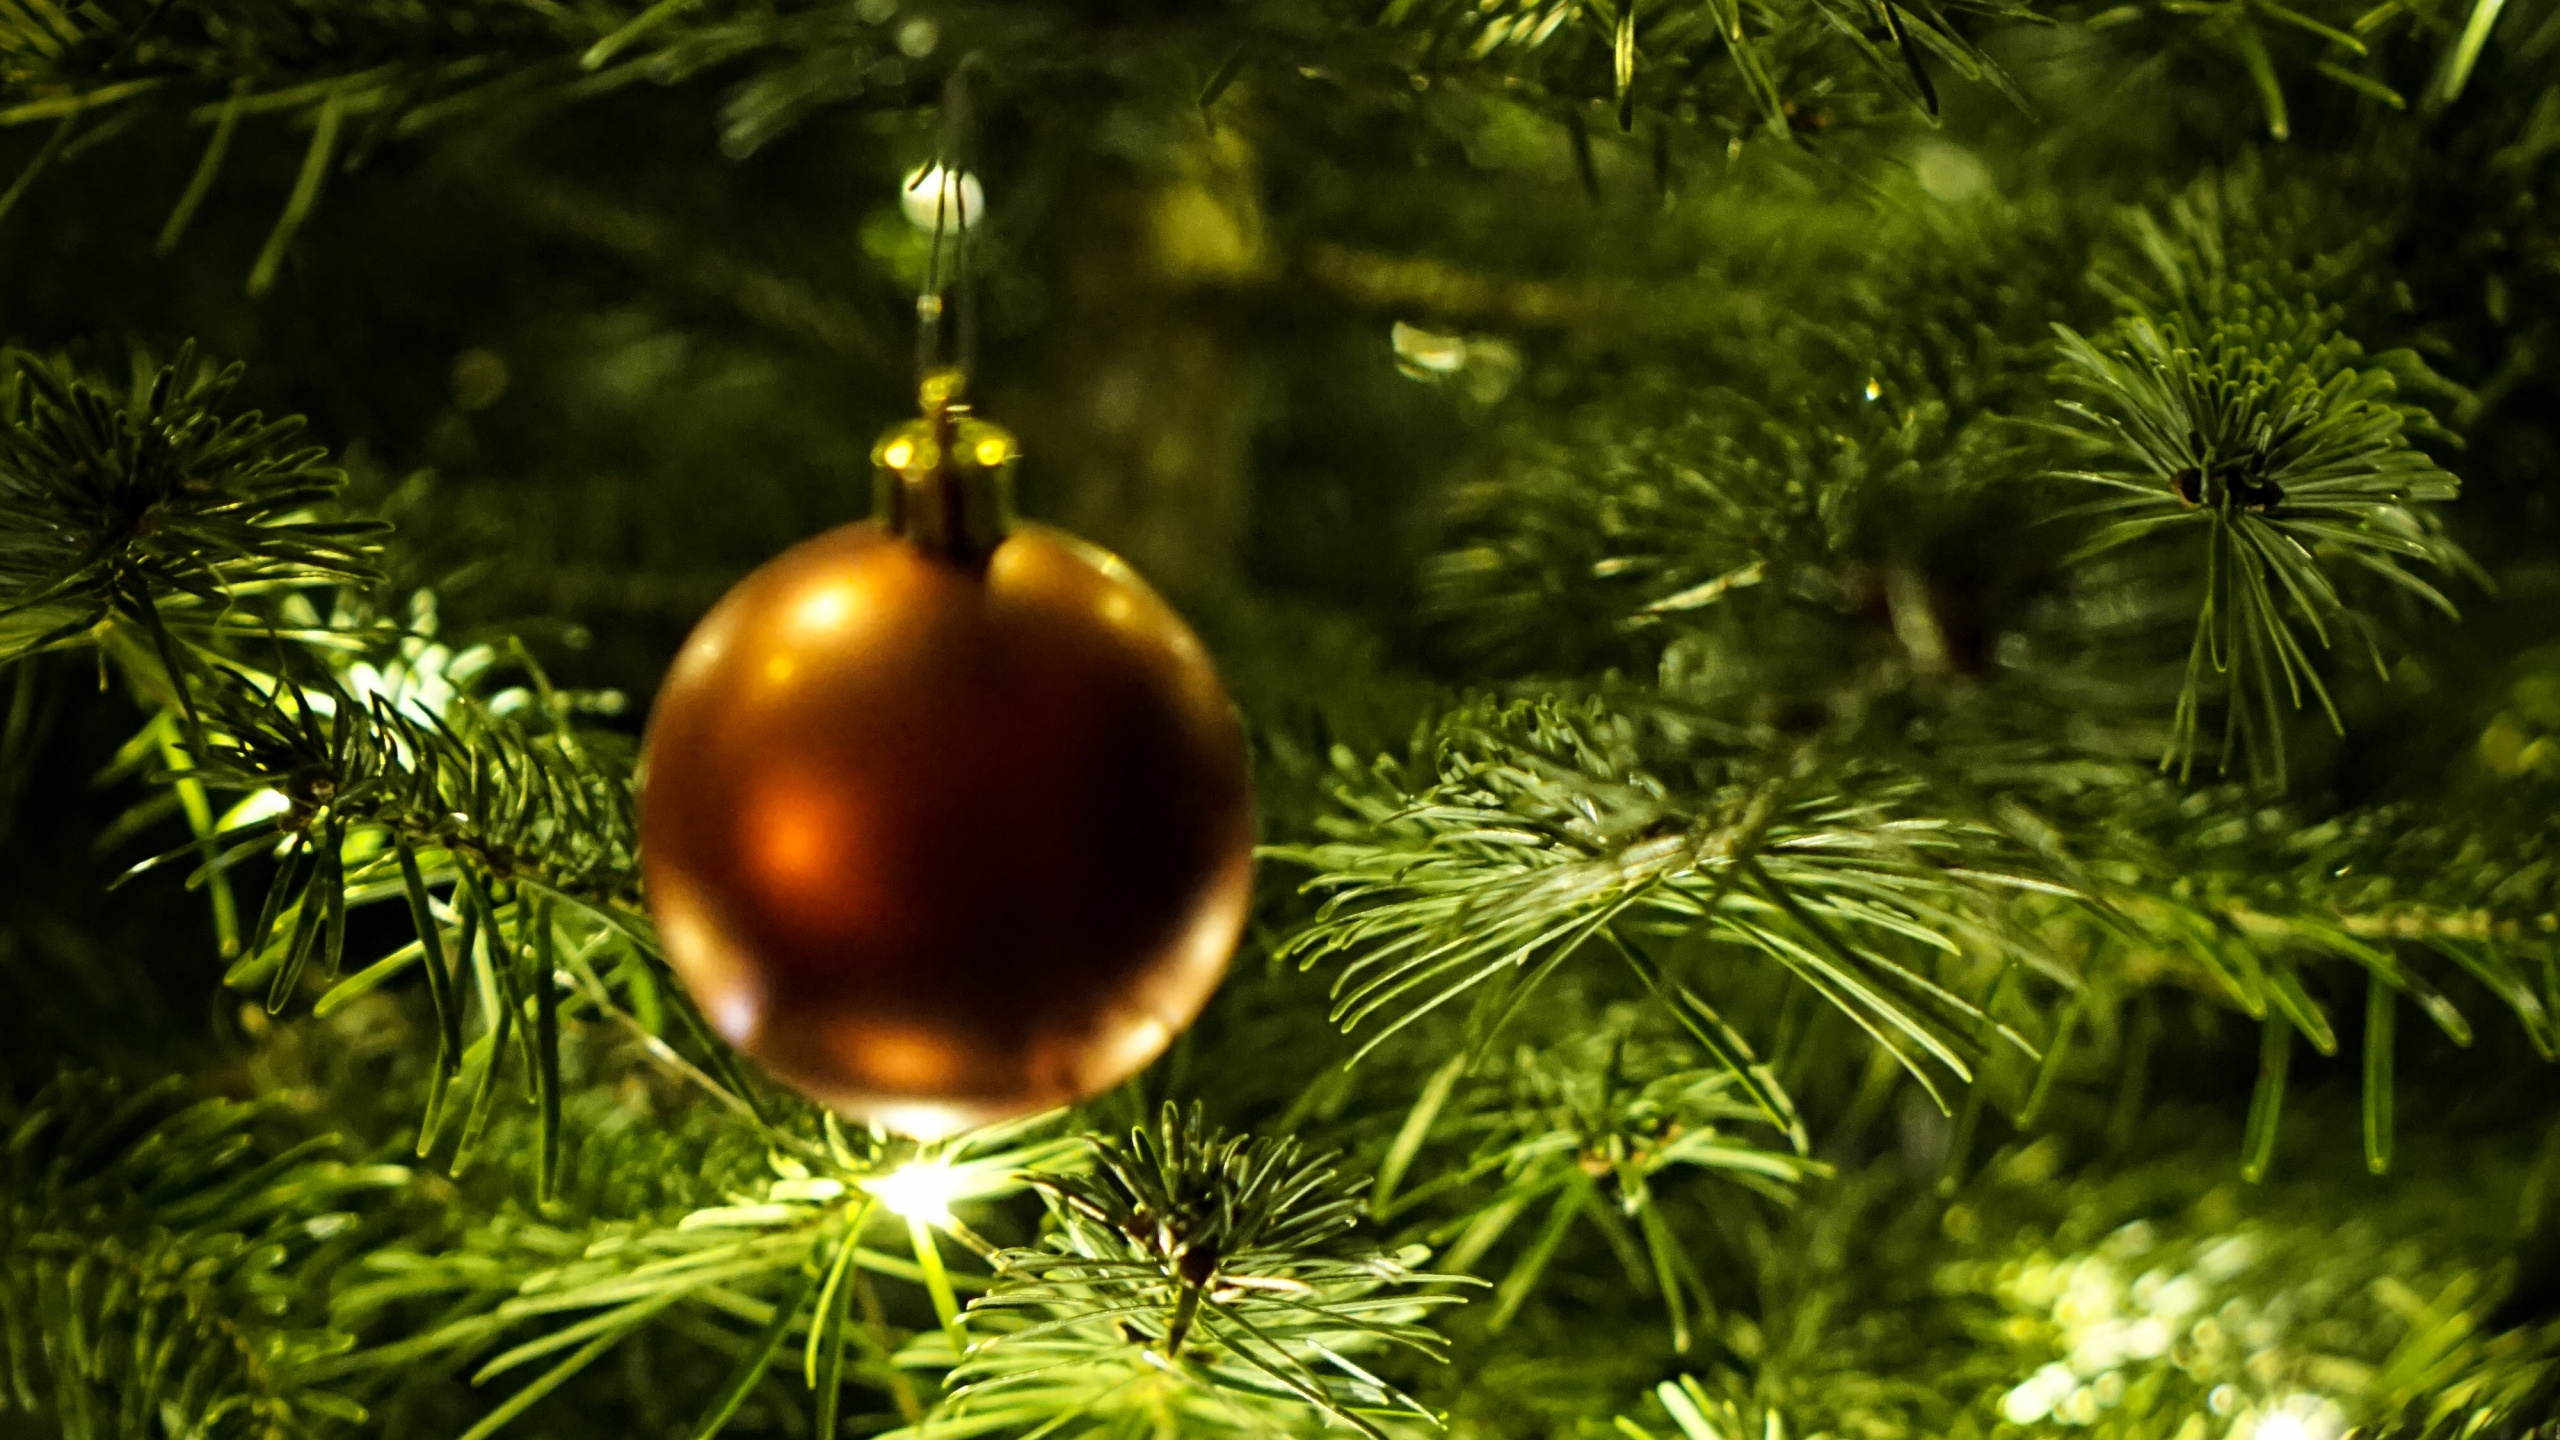 新的一年, 圣诞节那天, 圣诞节的装饰品, 圣诞装饰, 圣诞树 壁纸 2560x1440 允许